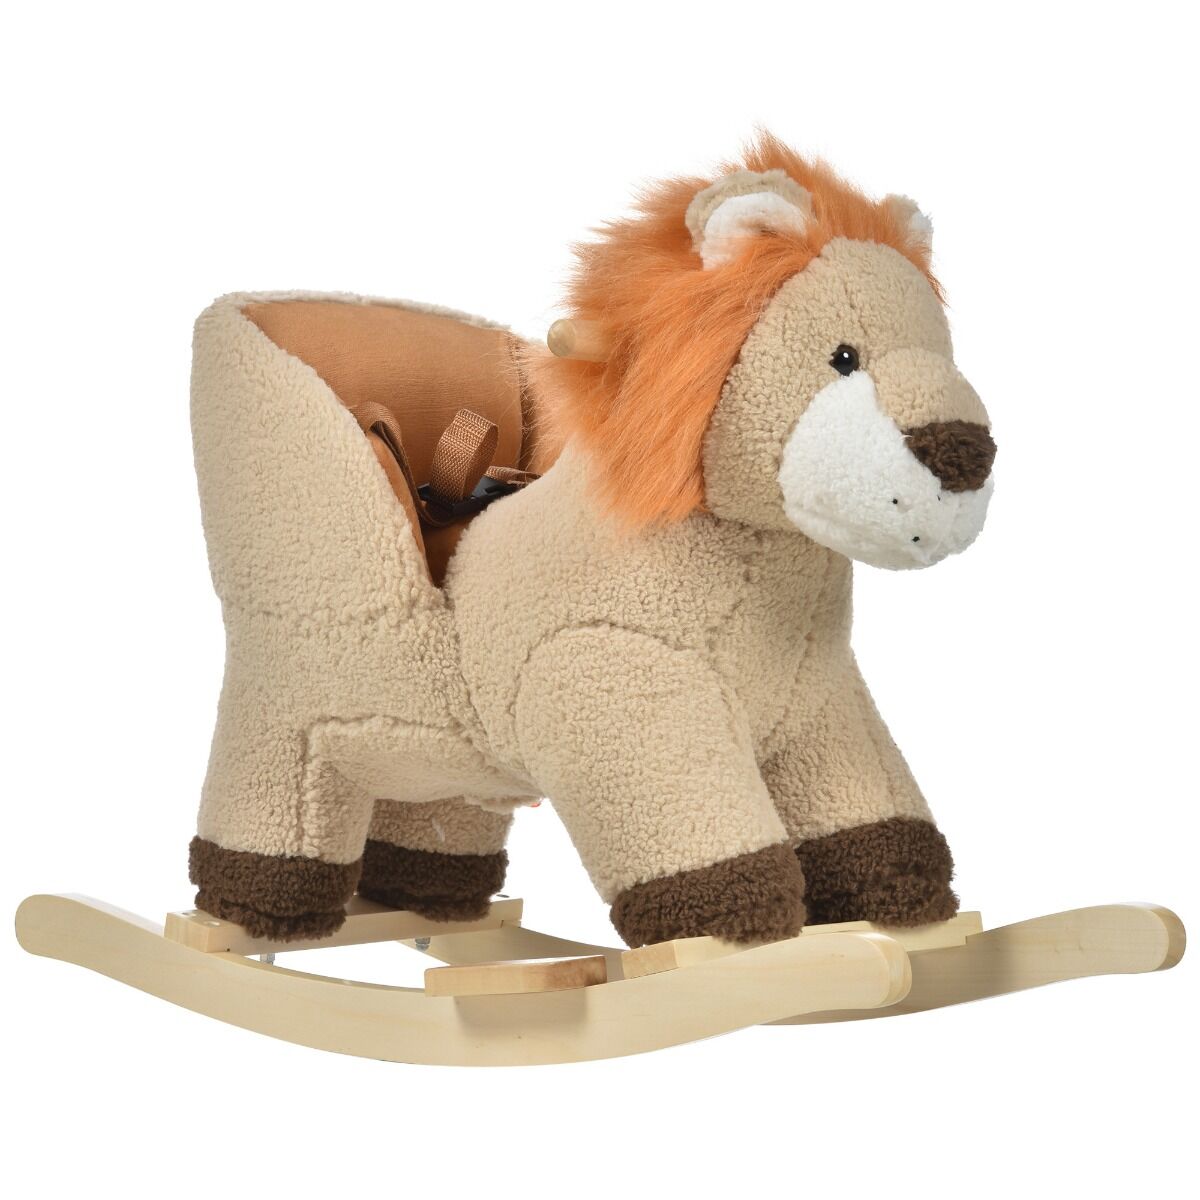 Homcom Dondolo giocattolo leone per bambini ruggisce legno e peluche marrone